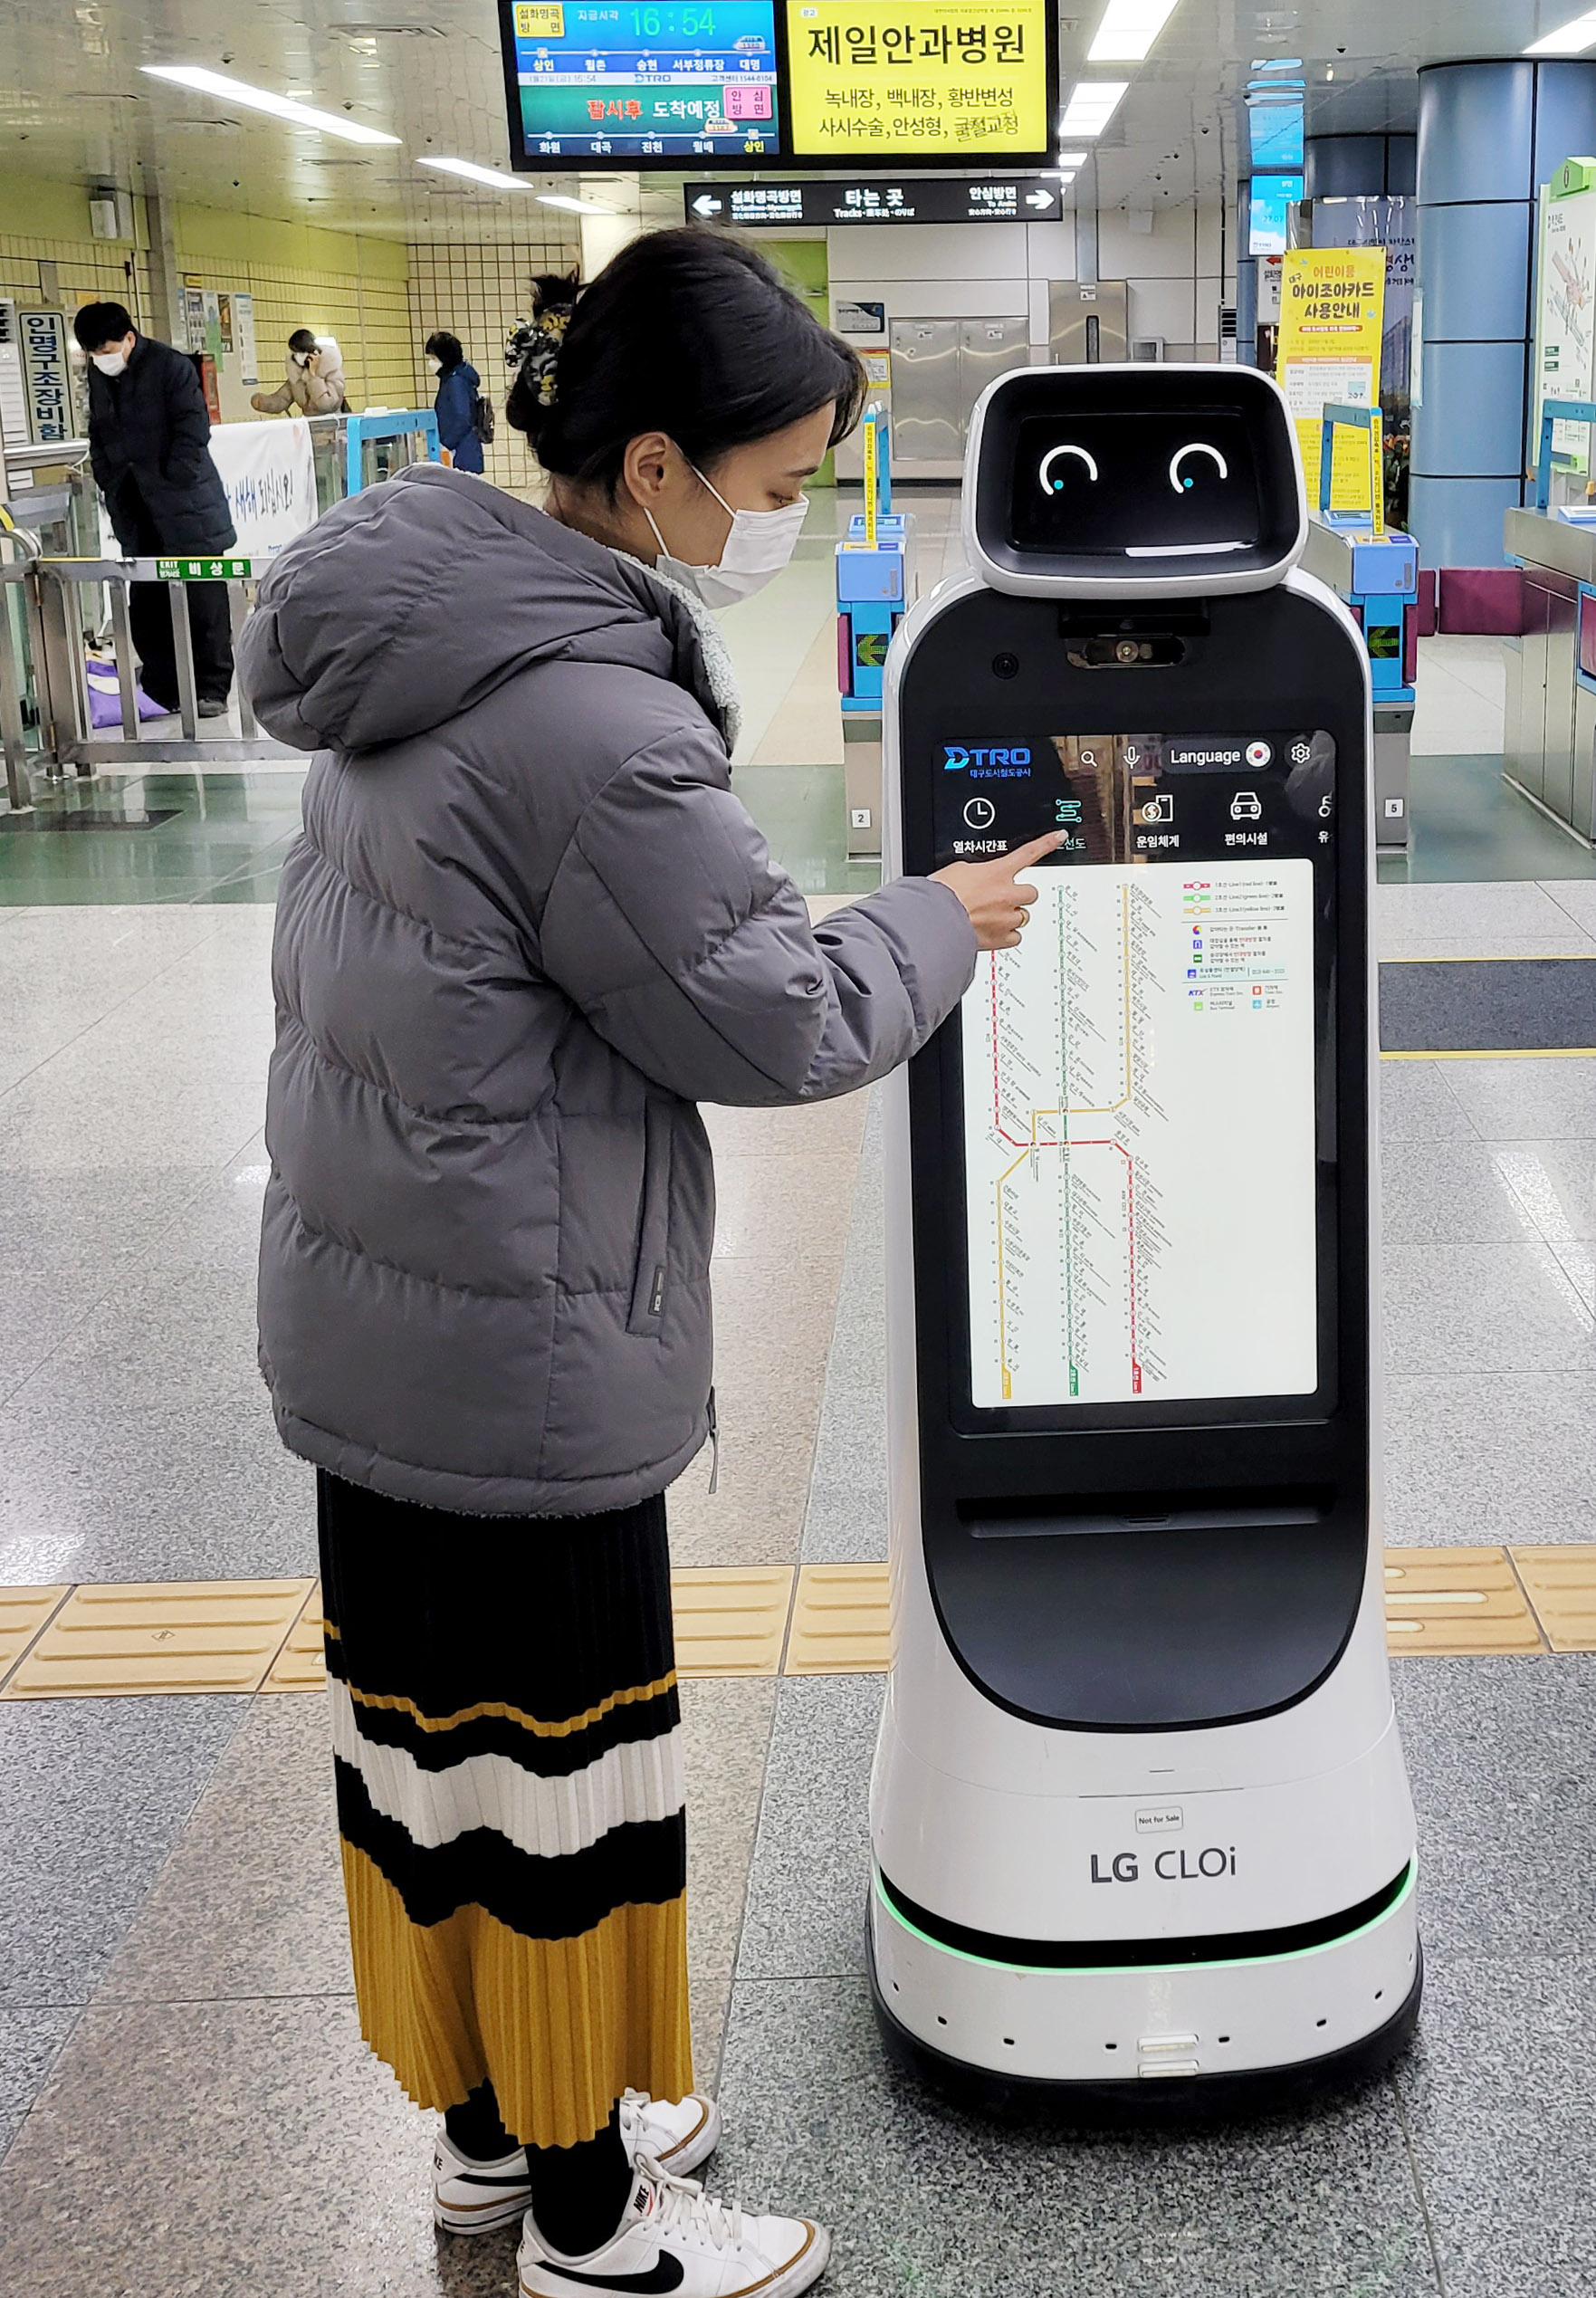 지하철을 이용하는 한 시민이 LG 클로이 가이드봇을 통해 노선도를 확인하고 있다. LG전자 제공.